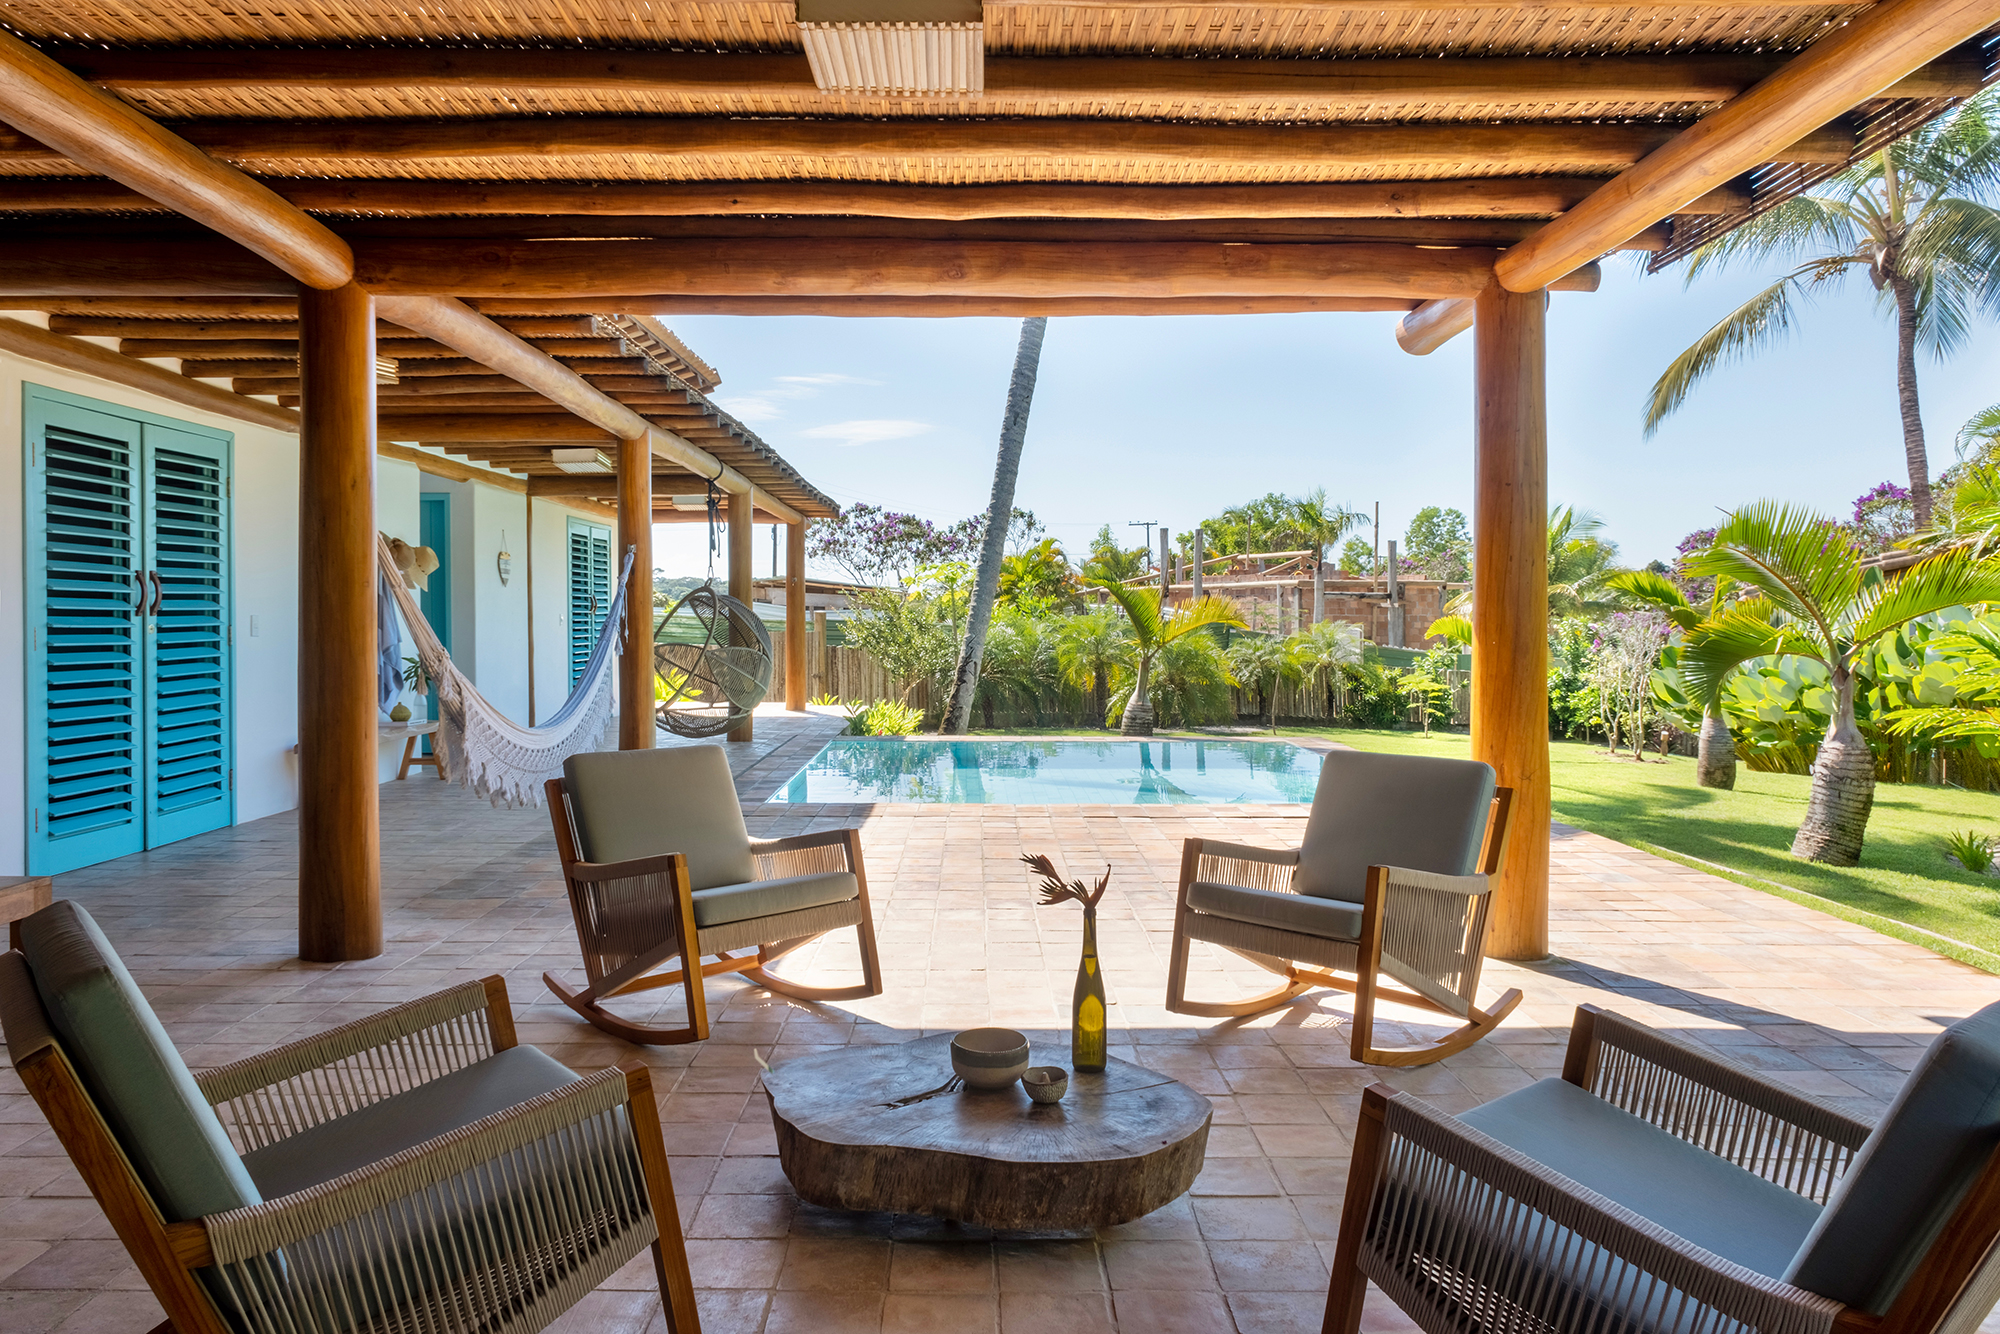 Casa em Trancoso é inspirada na arquitetura colonial do sul da Bahia. Projeto Conrado Ceravolo. Na foto, piscina com poltrona suspensa e banco. Varanda com pergolado.